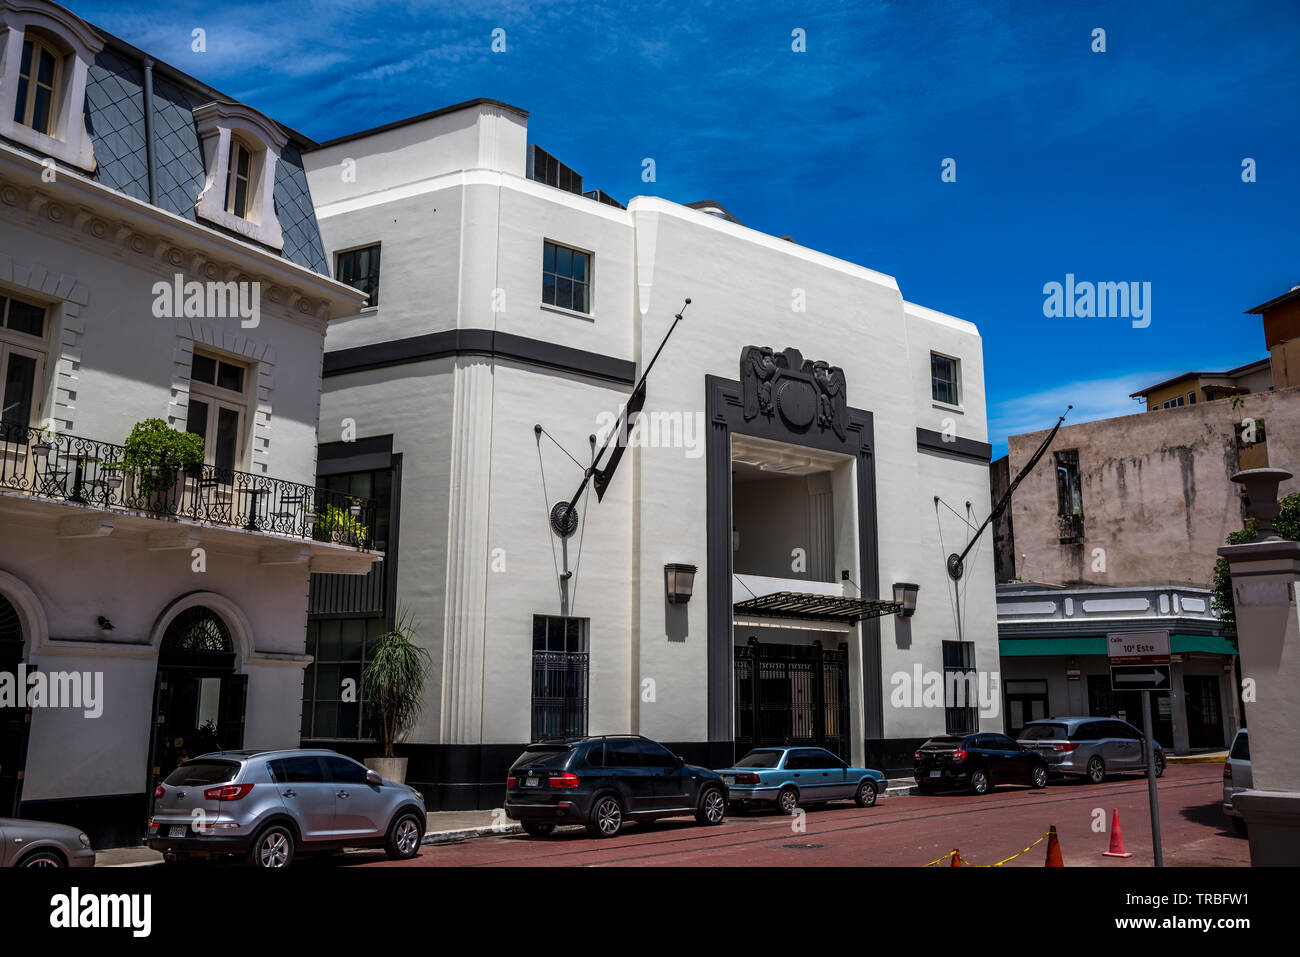 Old city bank building in Casco Viejo, Panama City, Panama Stock Photo